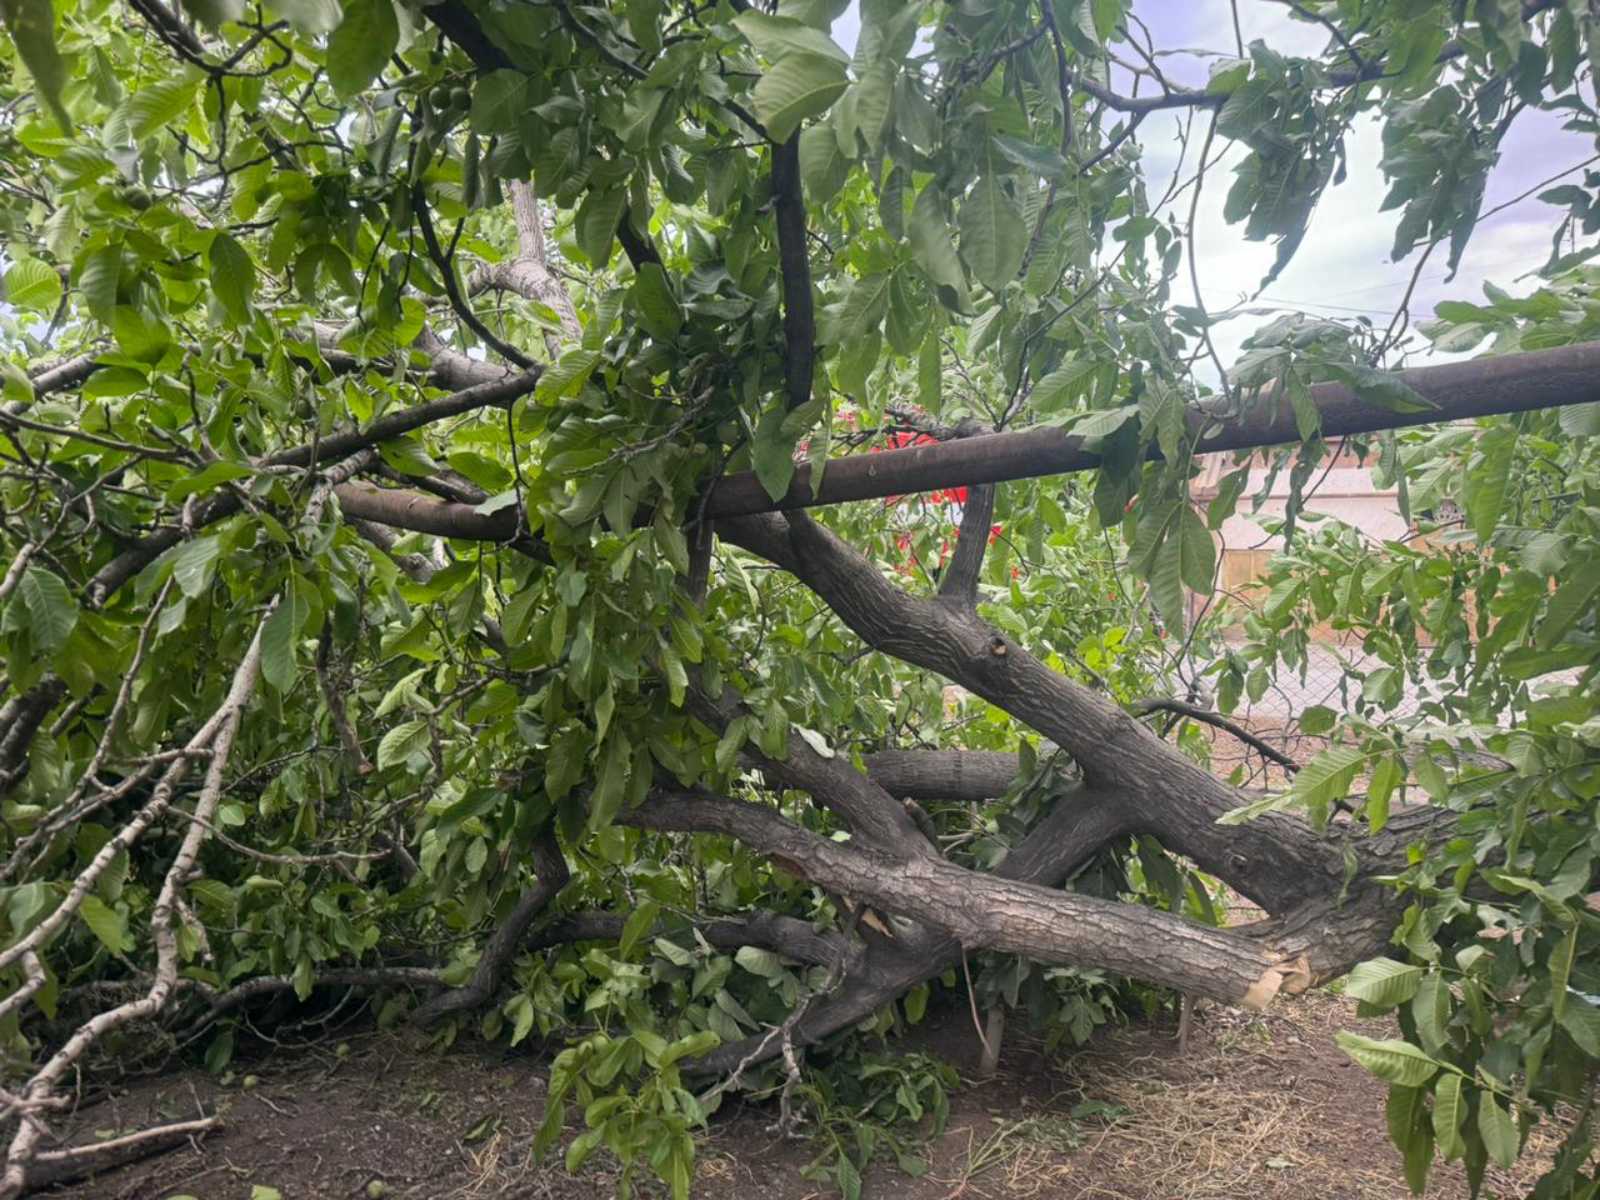 Քամու հետևանքով Երևանում և մի շարք մարզերում ծառեր են տապալվել, վնասվել տանիքներ